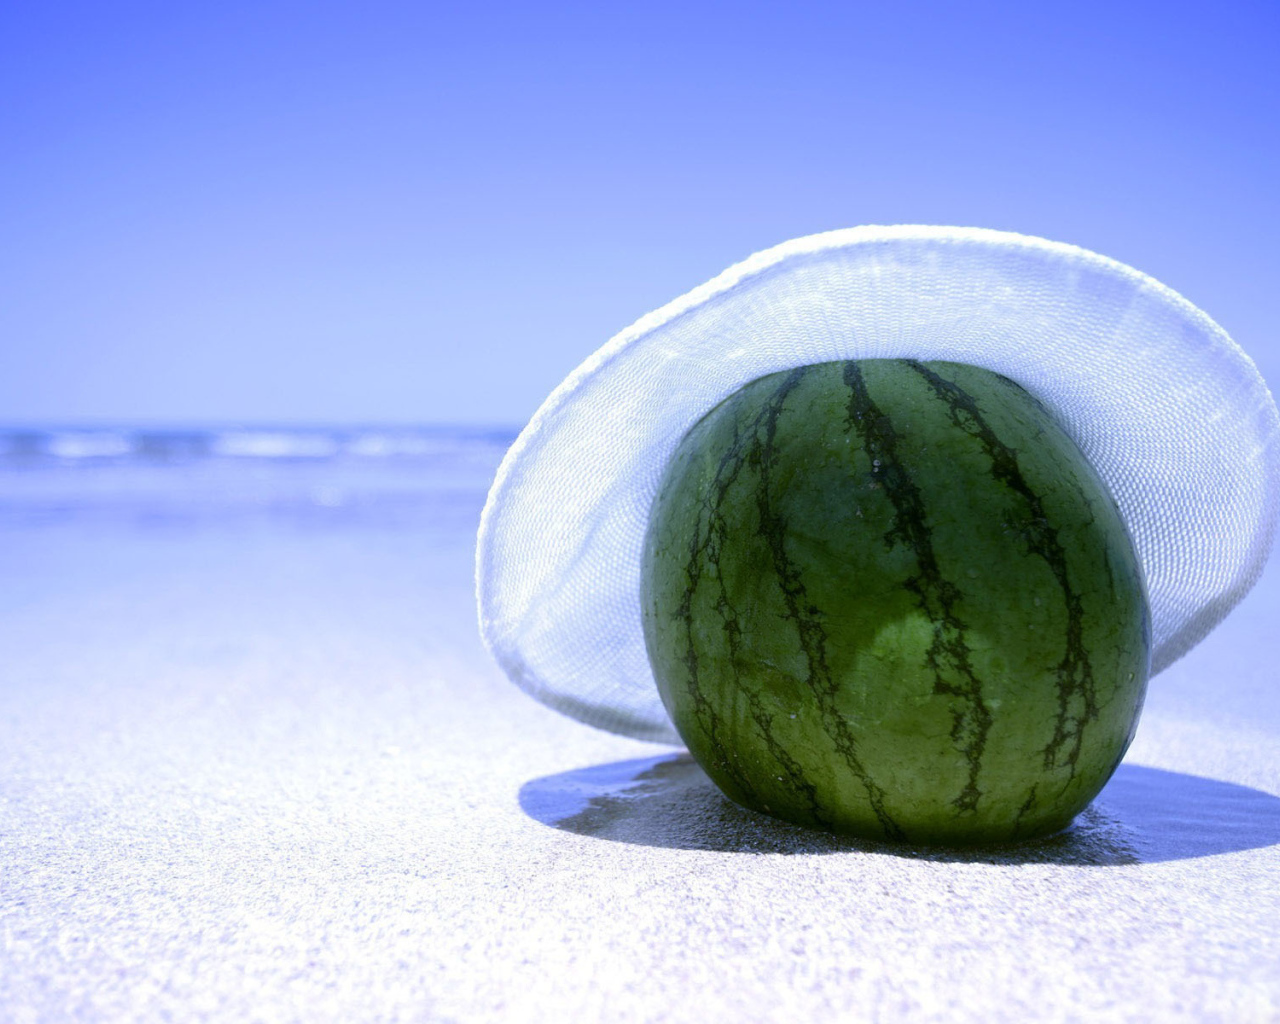 Watermelon on the beach